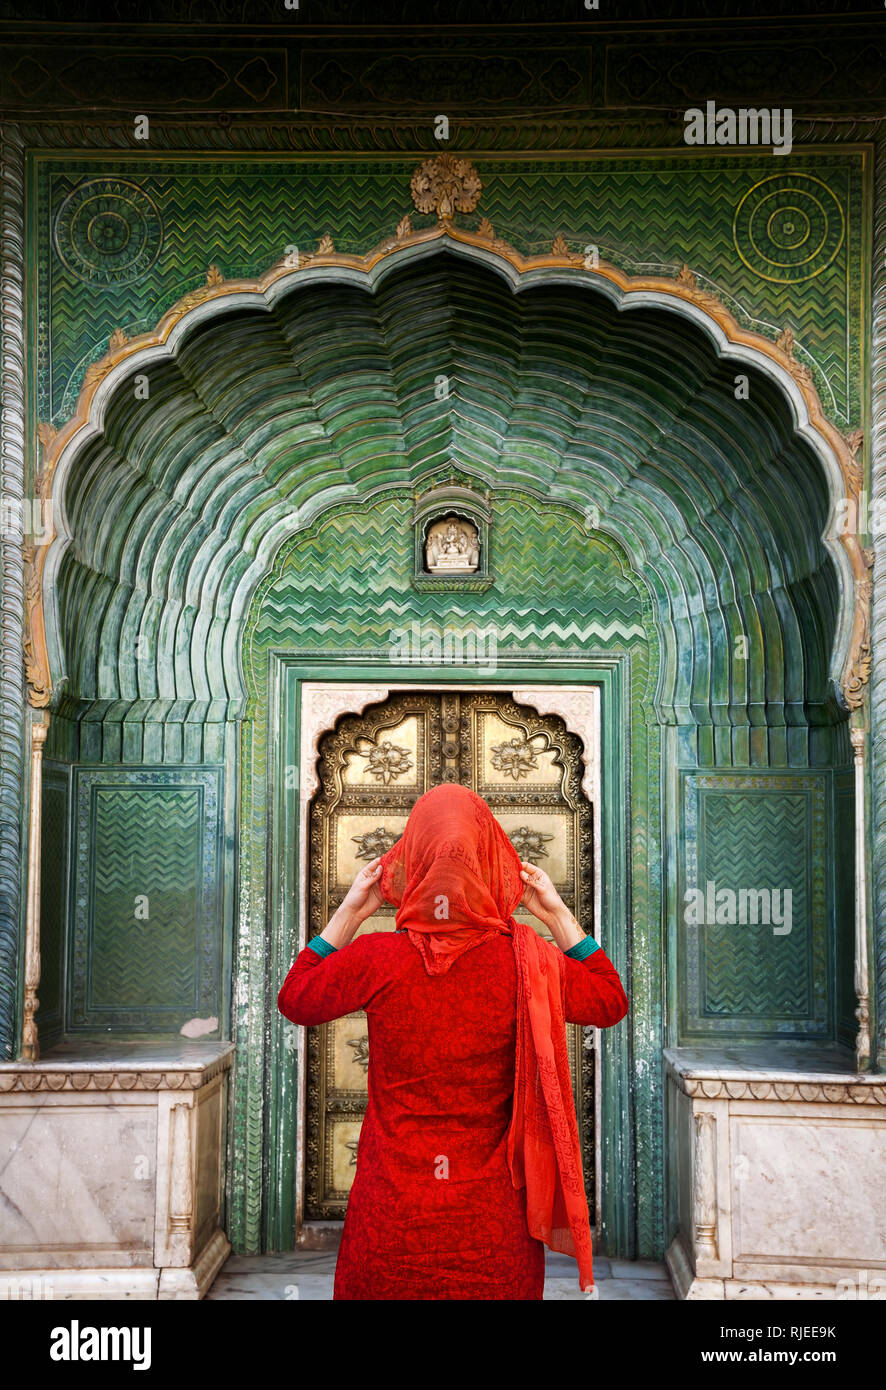 Indische Frau in rotem Schal suchen am grünen Tor im City Palace Jaipur, Rajasthan, Indien. Platz für Ihren Text, kann als Buch oder in einer Zeitschrift verwendet werden. Stockfoto